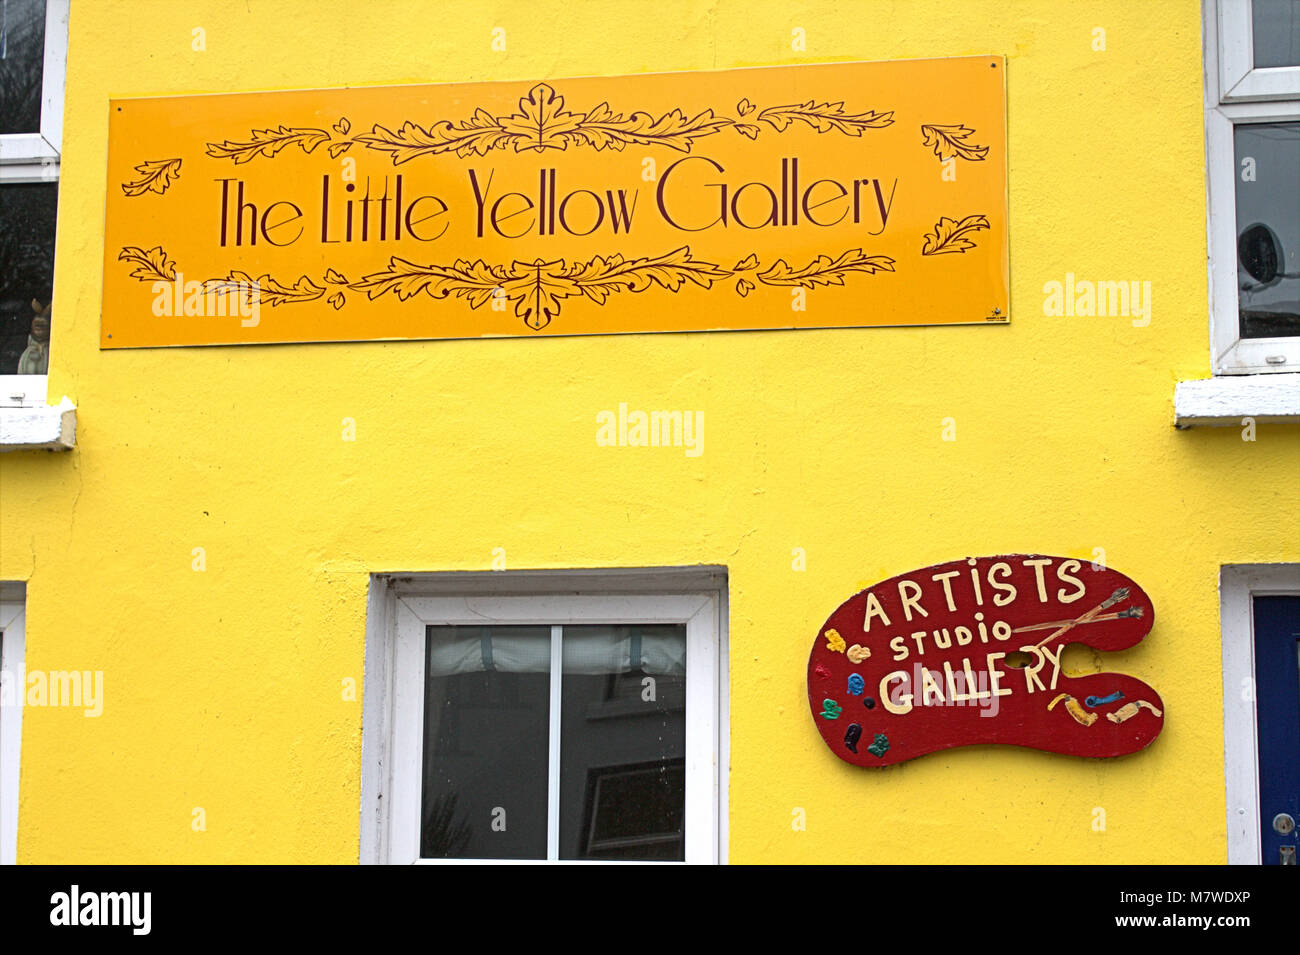 Una pequeña galería de artistas en unión Hall, West Cork, Irlanda. Pintado de color amarillo brillante en el exterior. Foto de stock